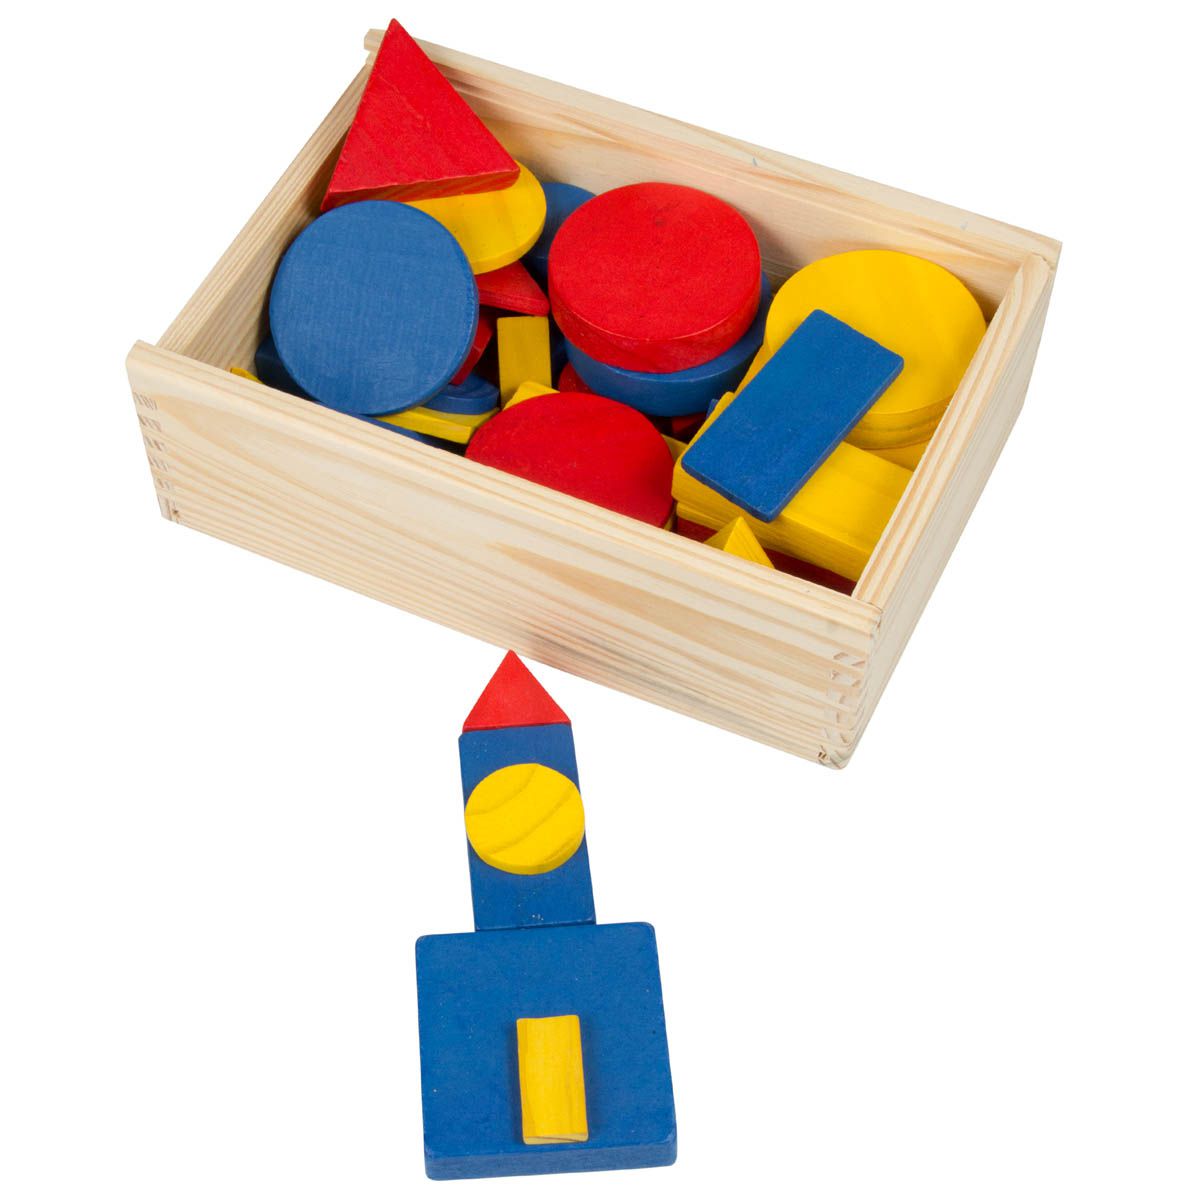 Numeral e Quantitativo - Brinquedo lúdico pedagógico, jogo